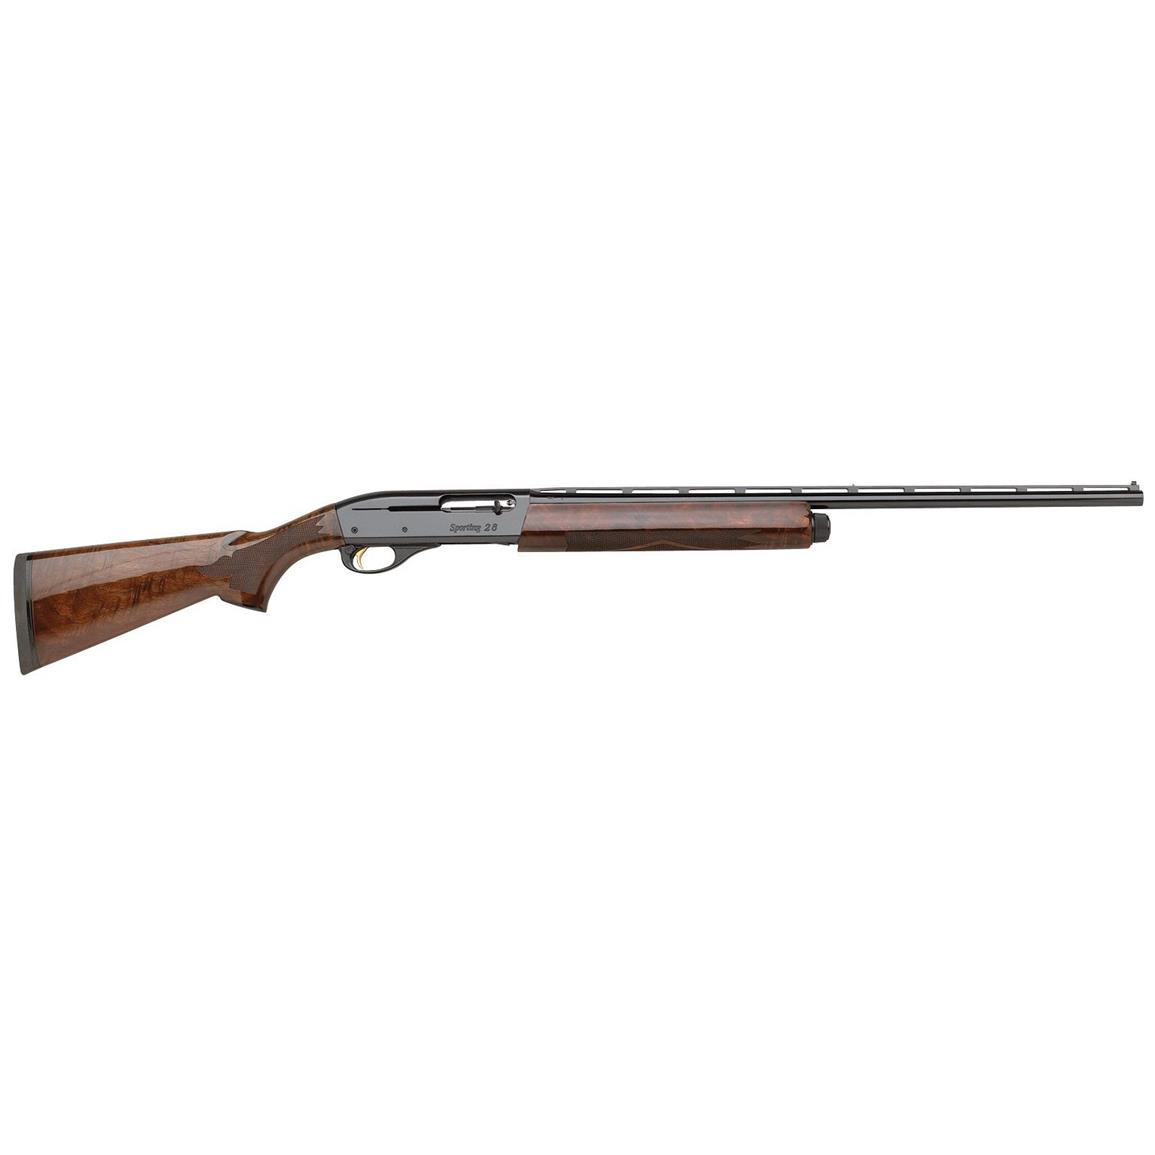 Remington Model 1100 Sporting, Semi-Automatic, .410 Bore, 27" Barrel, 5 1 Rounds